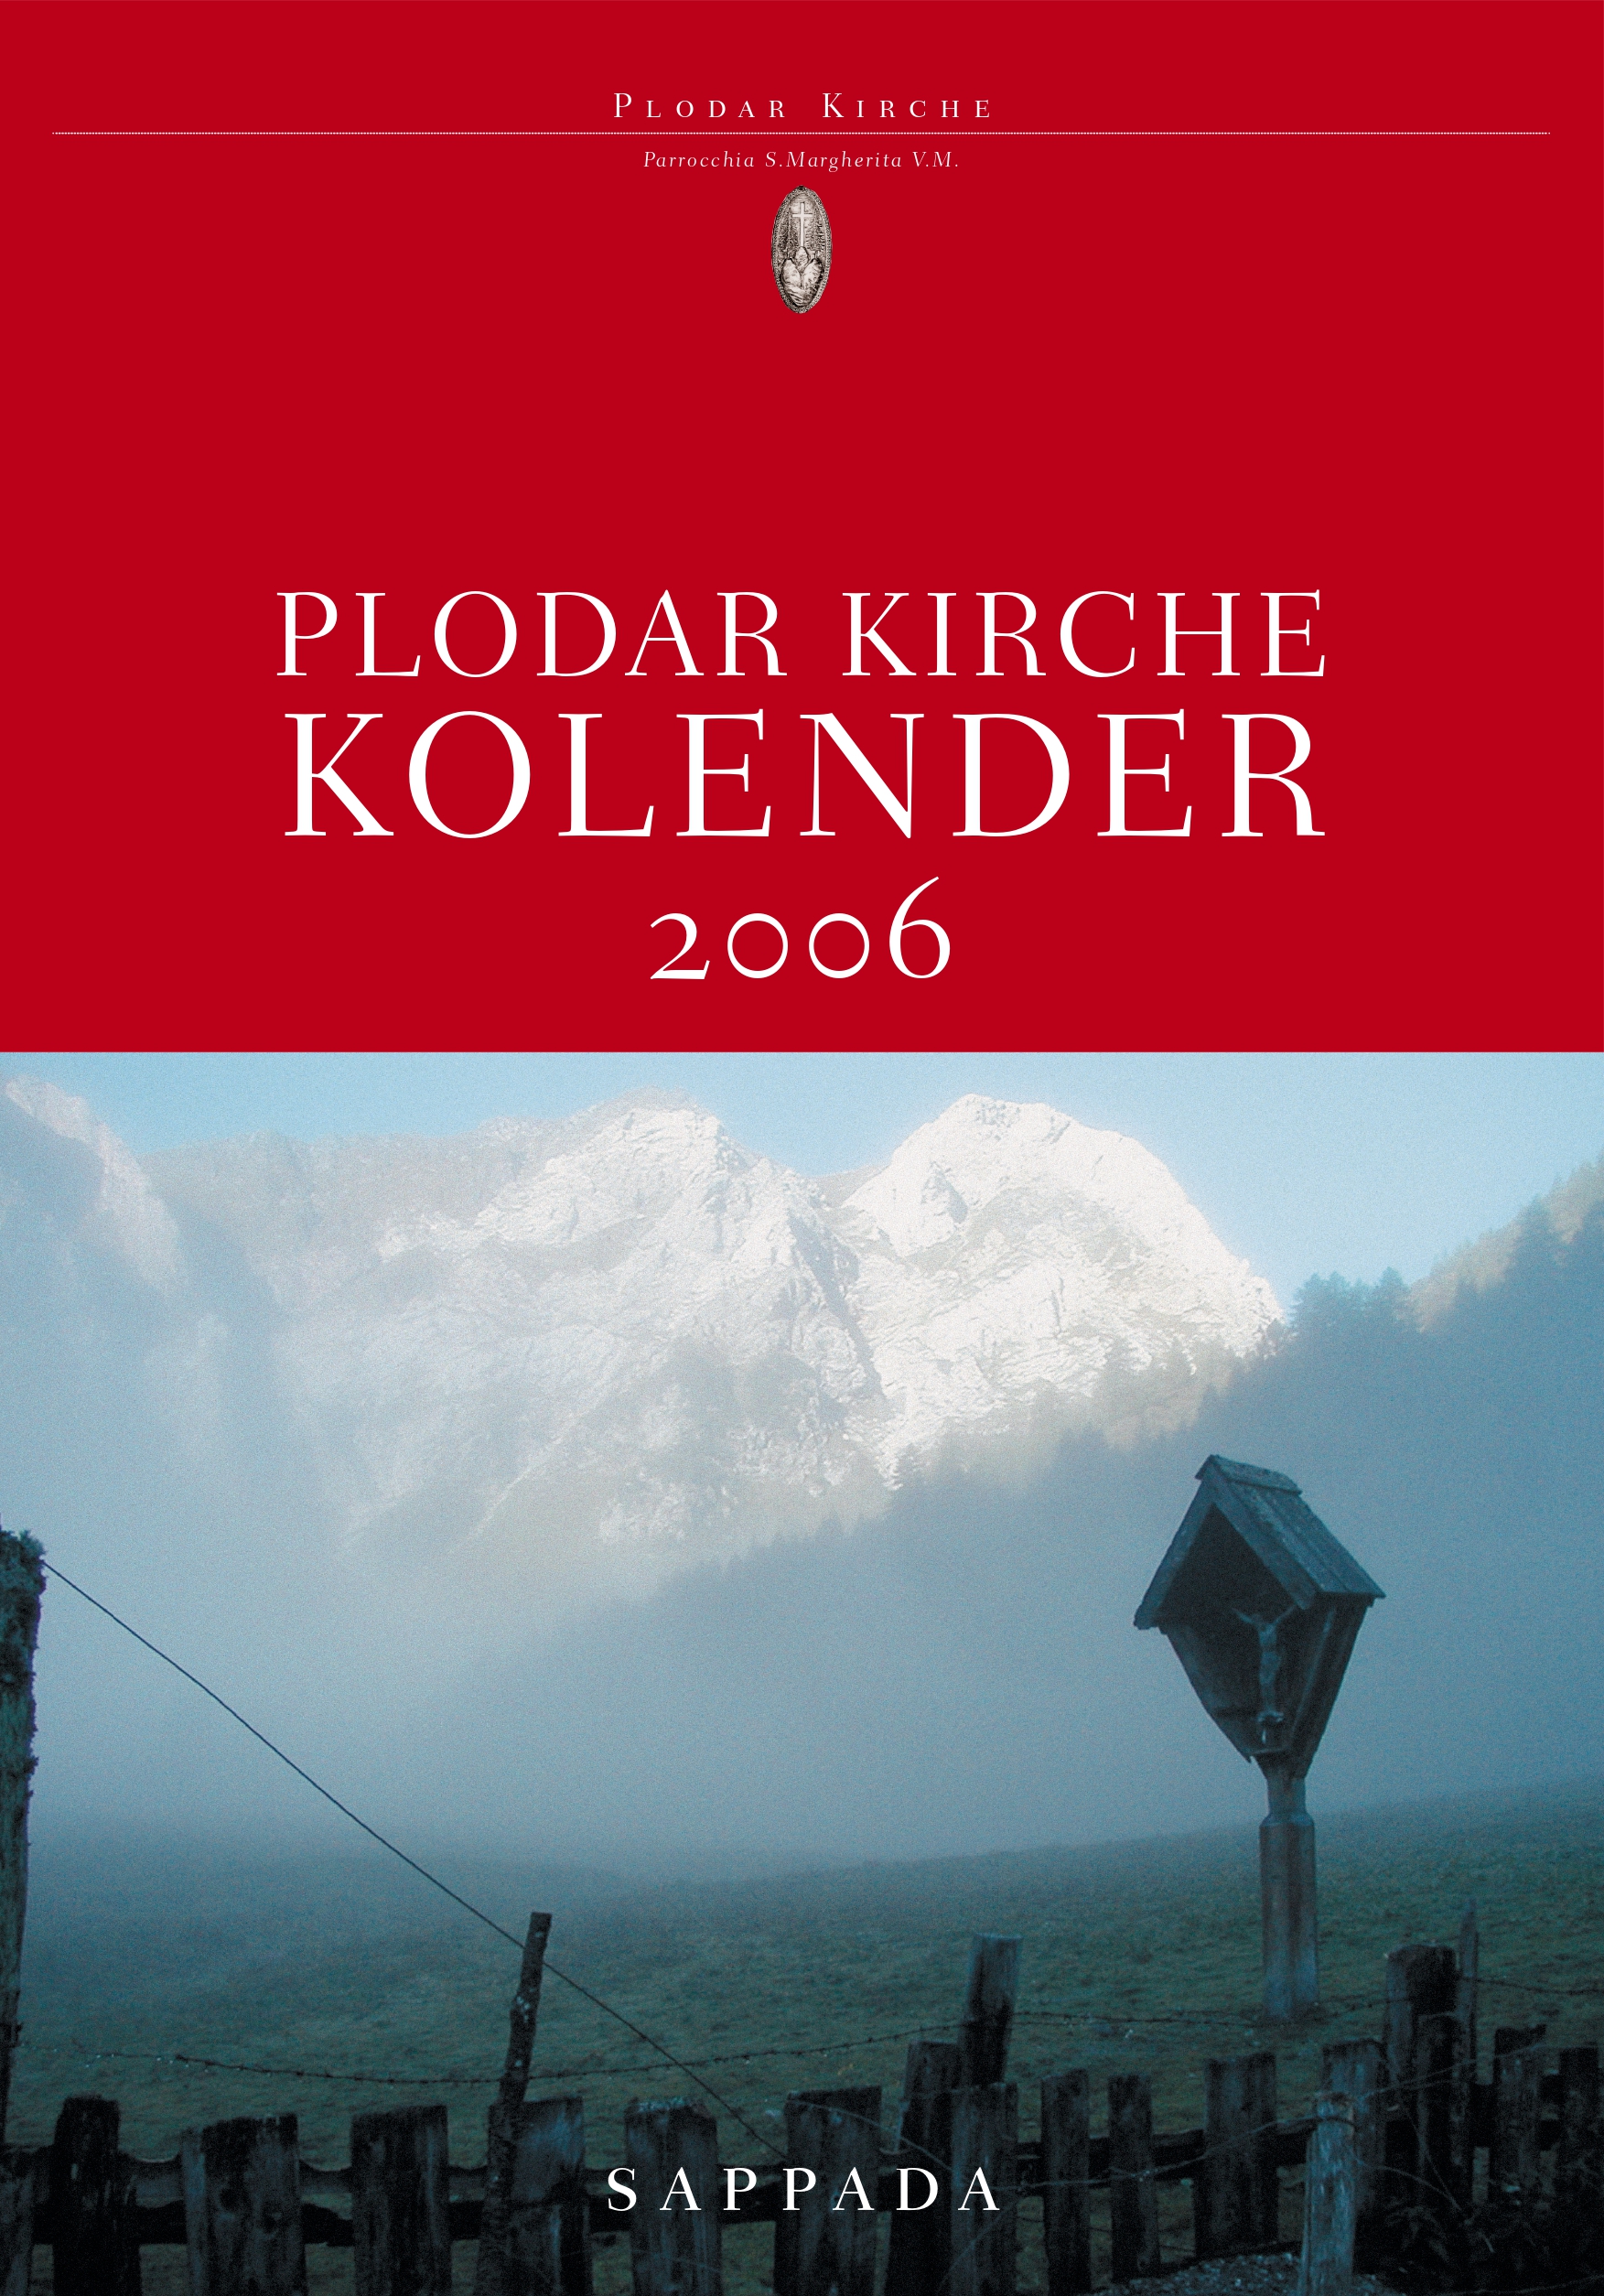 Plodar-kirche-kolender-2006